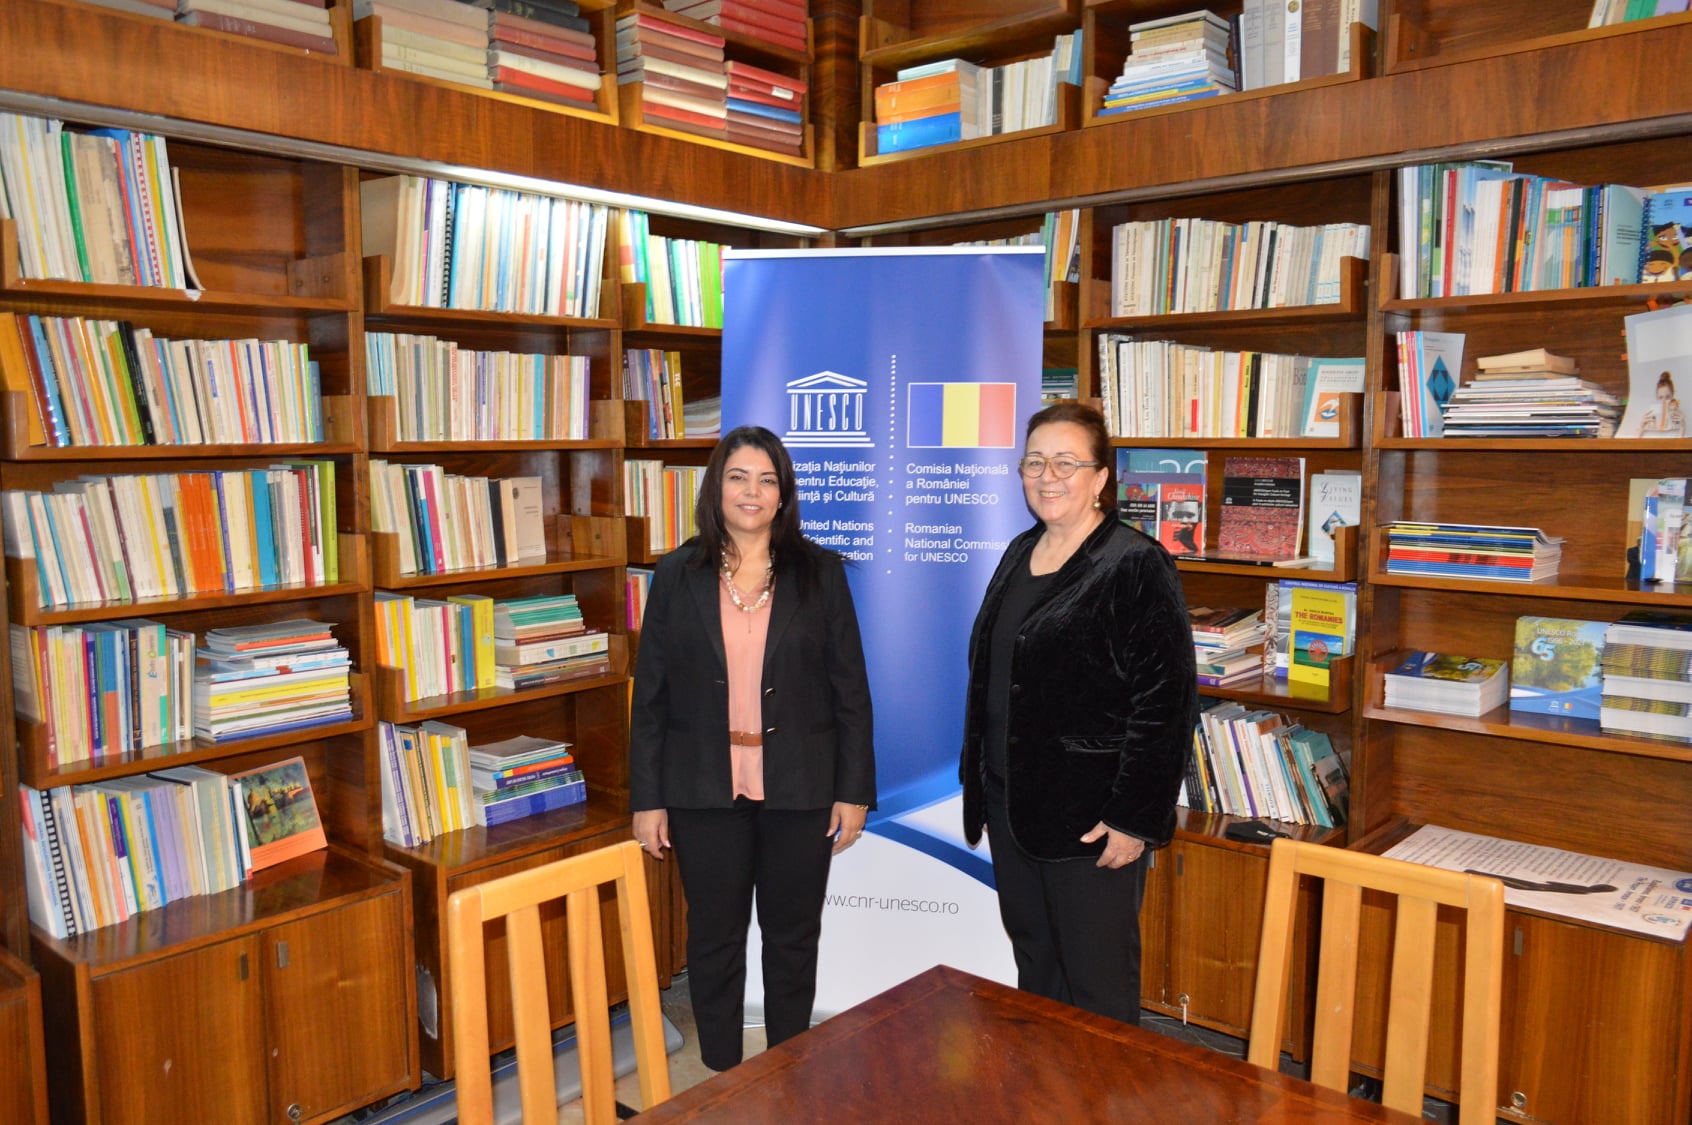 Gala Comisiei Naționale a României pentru UNESCO în An Centenar 2